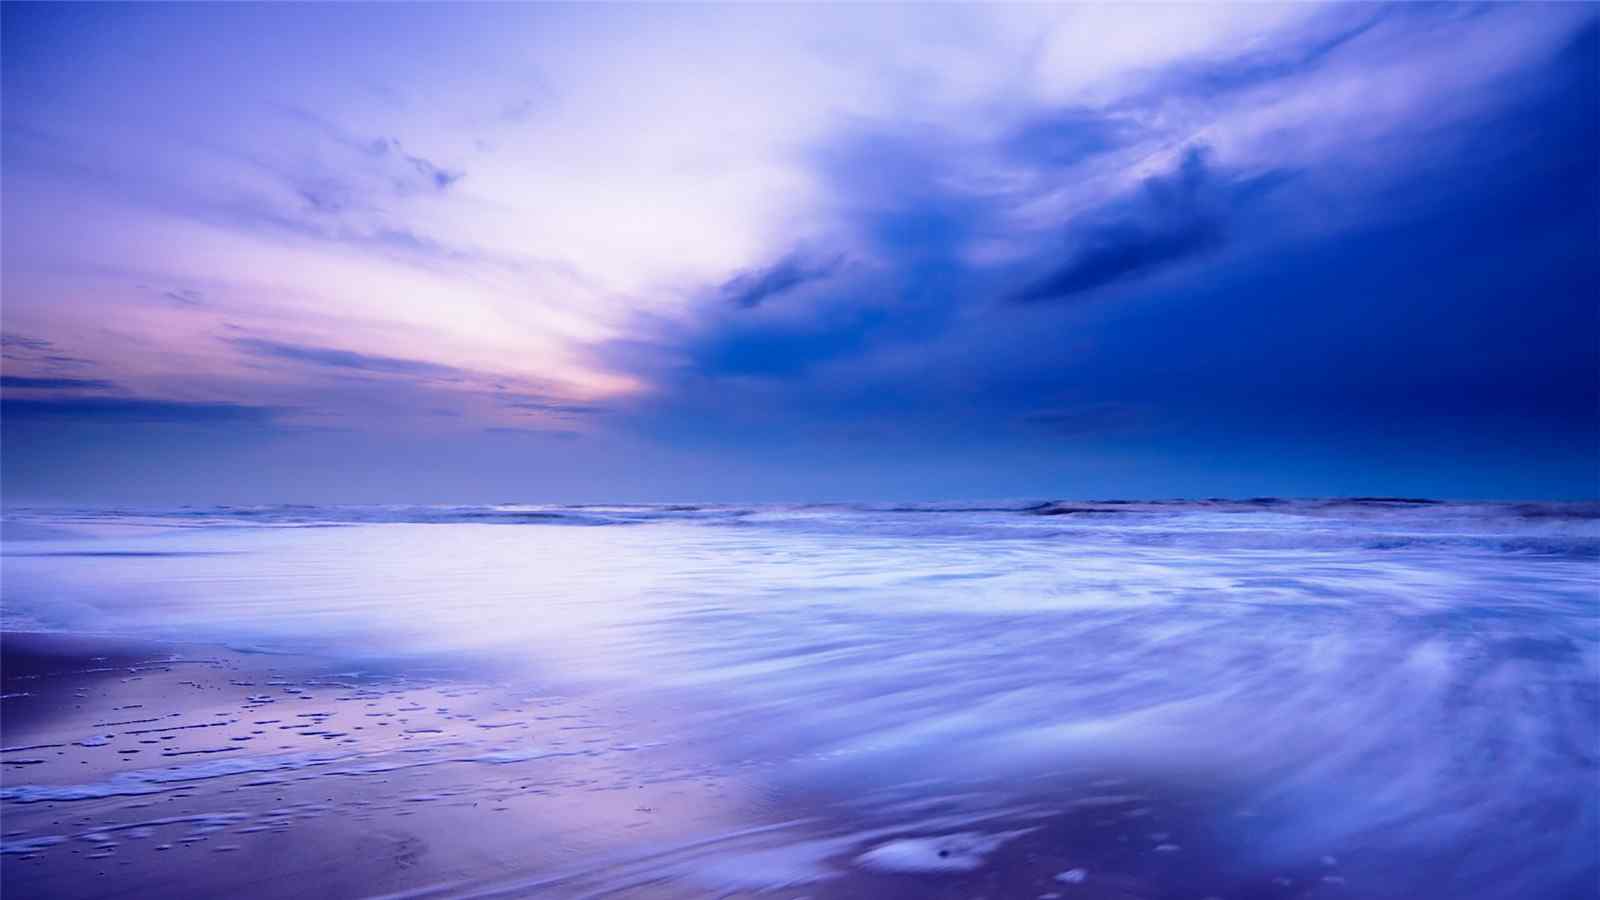 大海的黄昏唯美风景图片壁纸